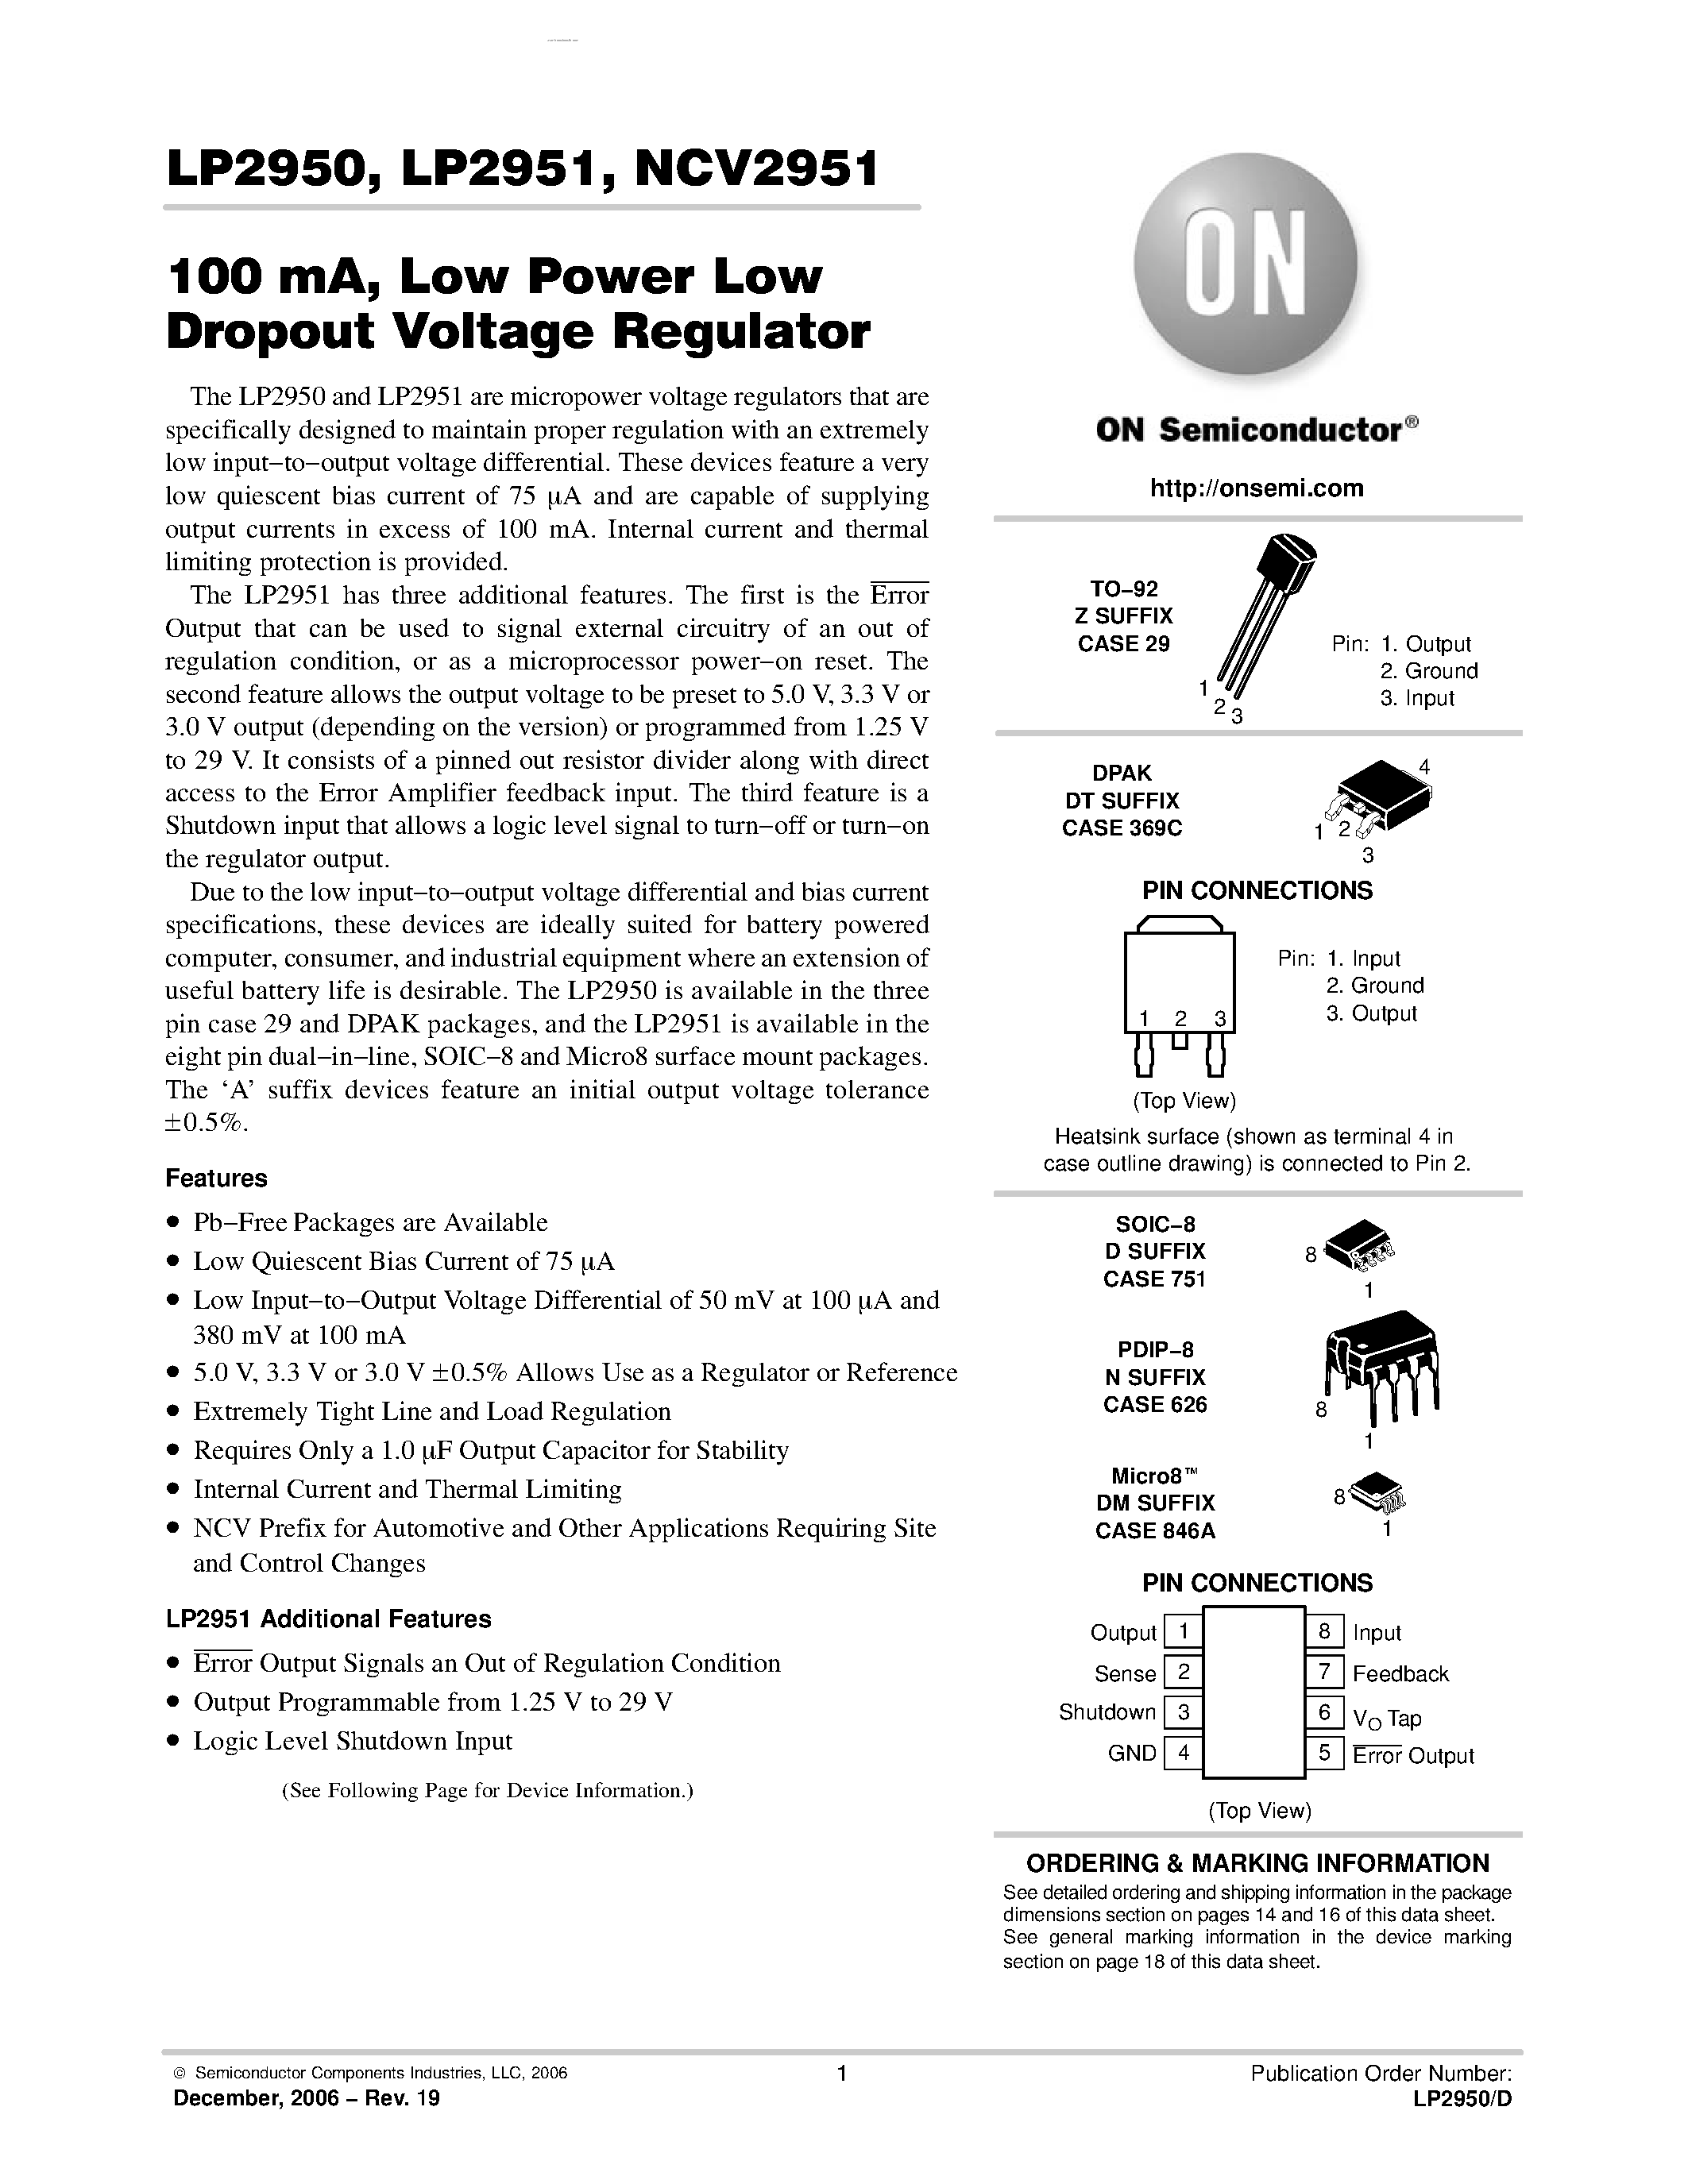 Datasheet LP2950 - (LP2950 / LP2951) Low Power Low Dropout Voltage Regulator page 1